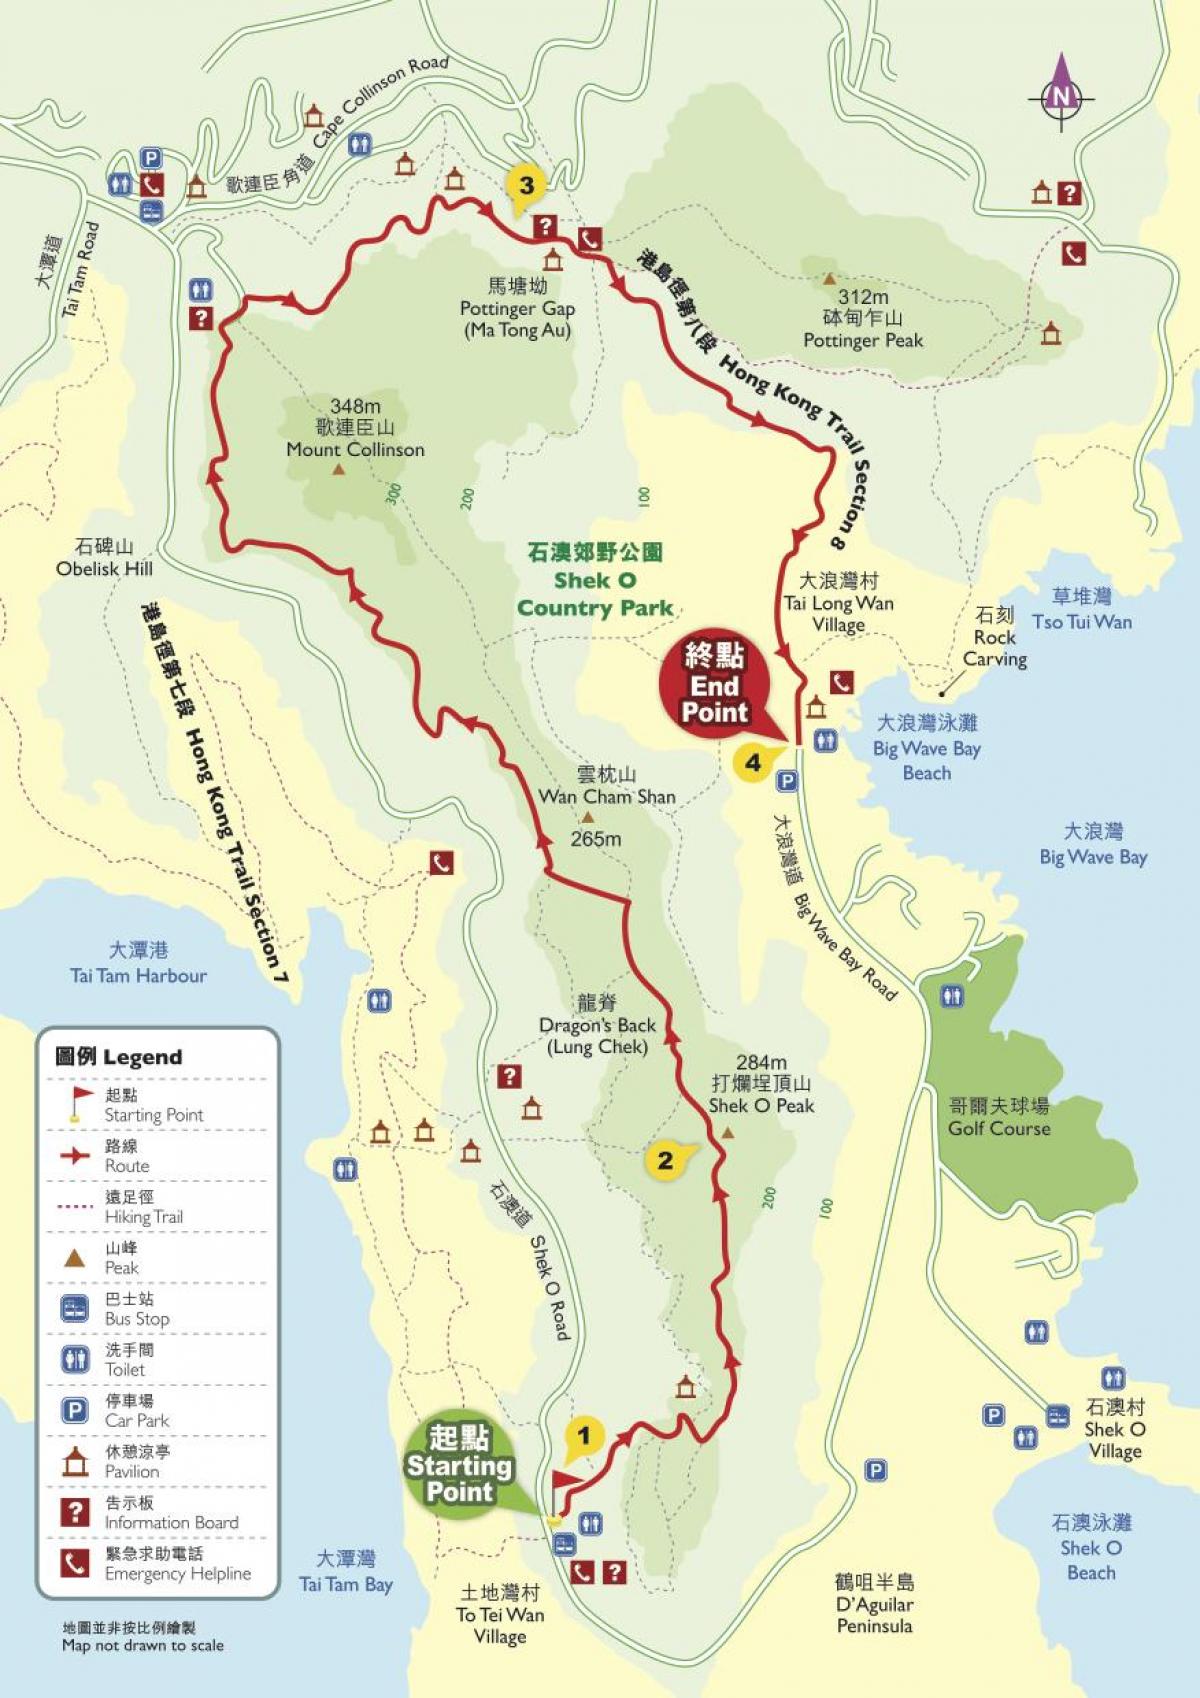 სალაშქრო რუკა Hong Kong